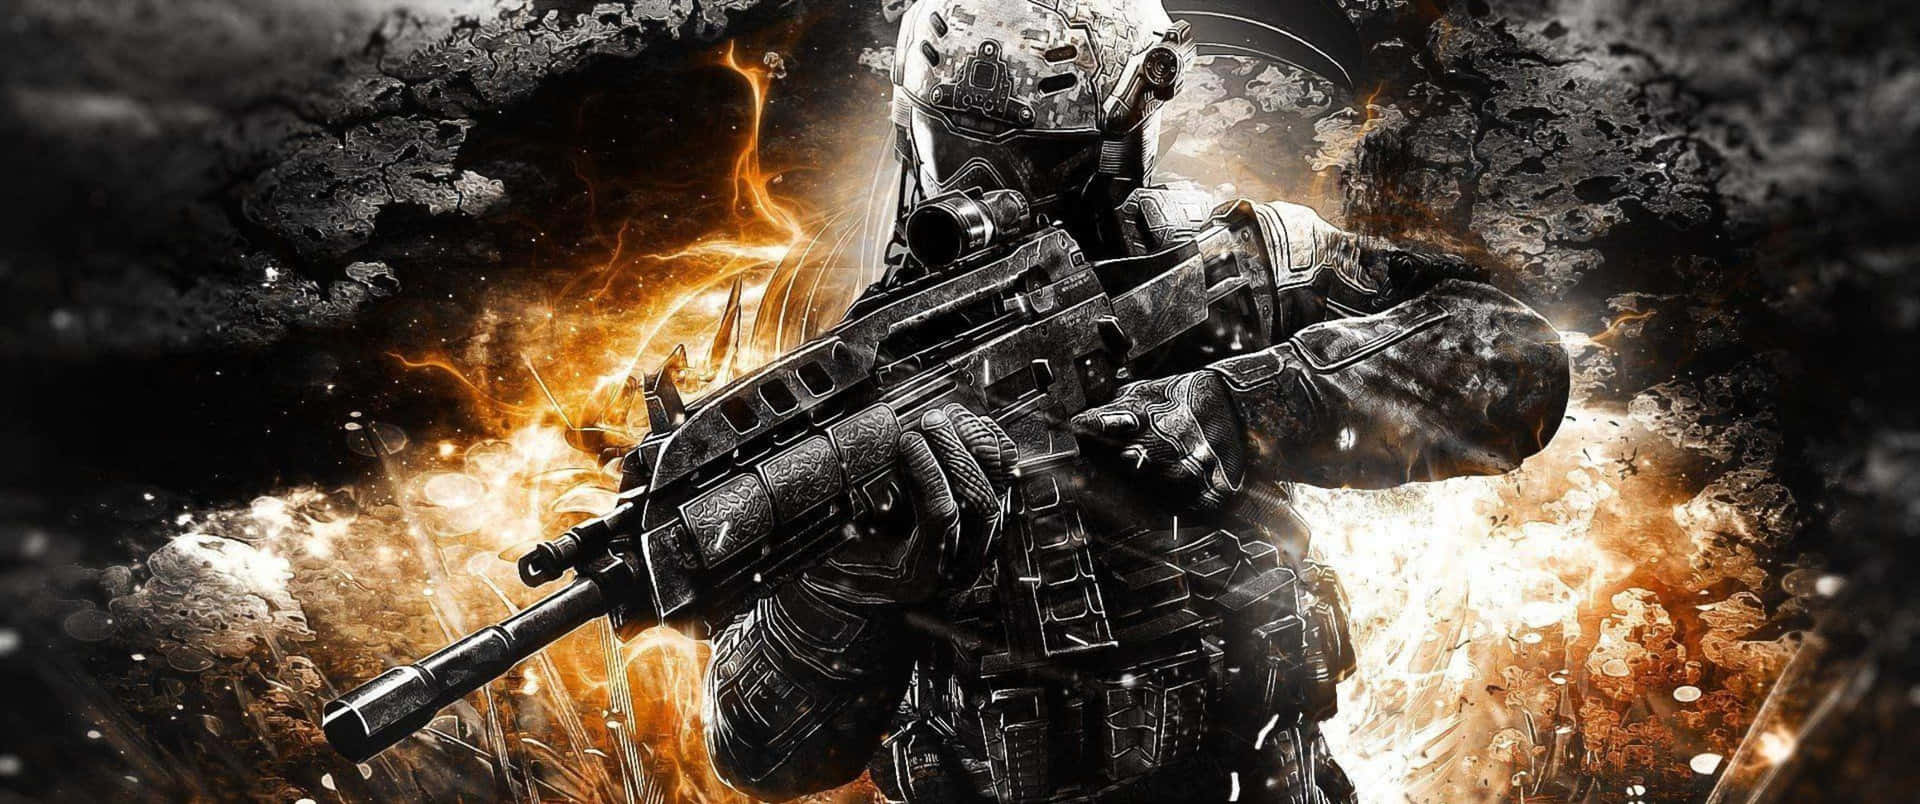 Kämpadig Fram I Call Of Duty: Black Ops 4 - Upplev En Helt Ny Nivå Av Intensitet.